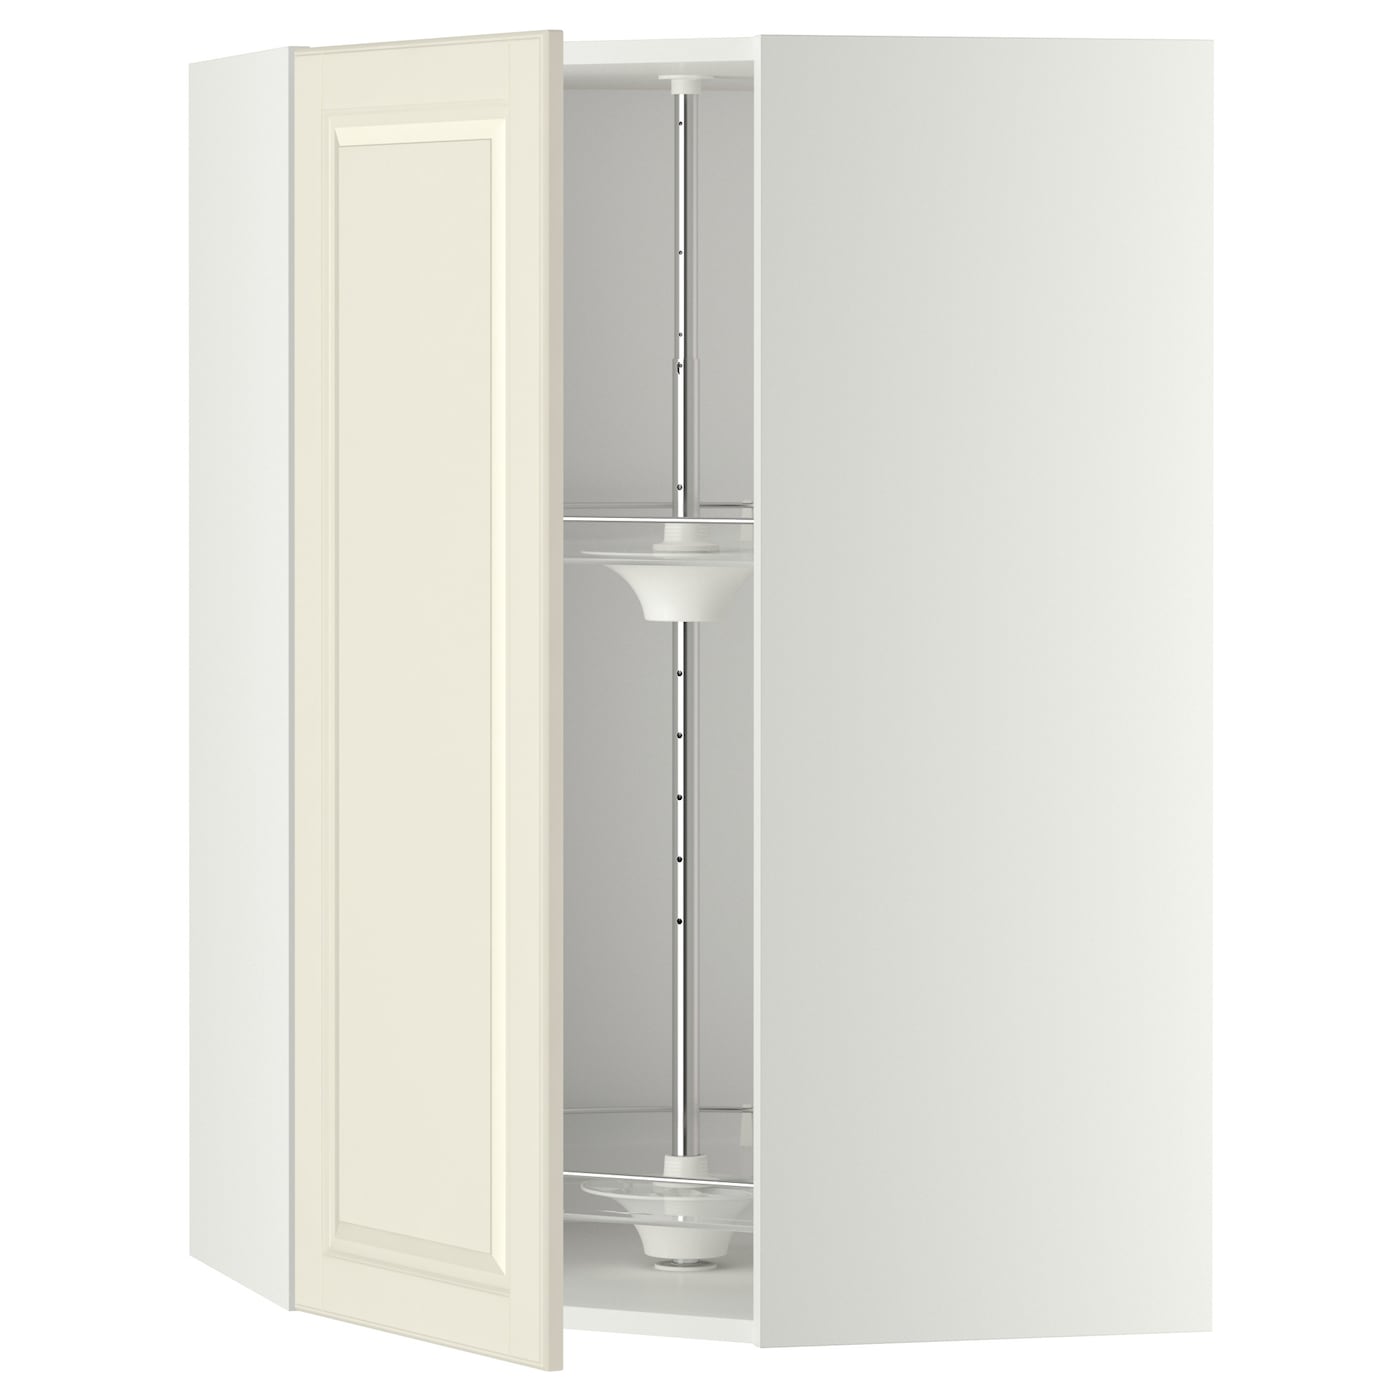 Угловой навесной шкаф с каруселью - METOD  IKEA/  МЕТОД ИКЕА, 100х68 см, белый/кремовый